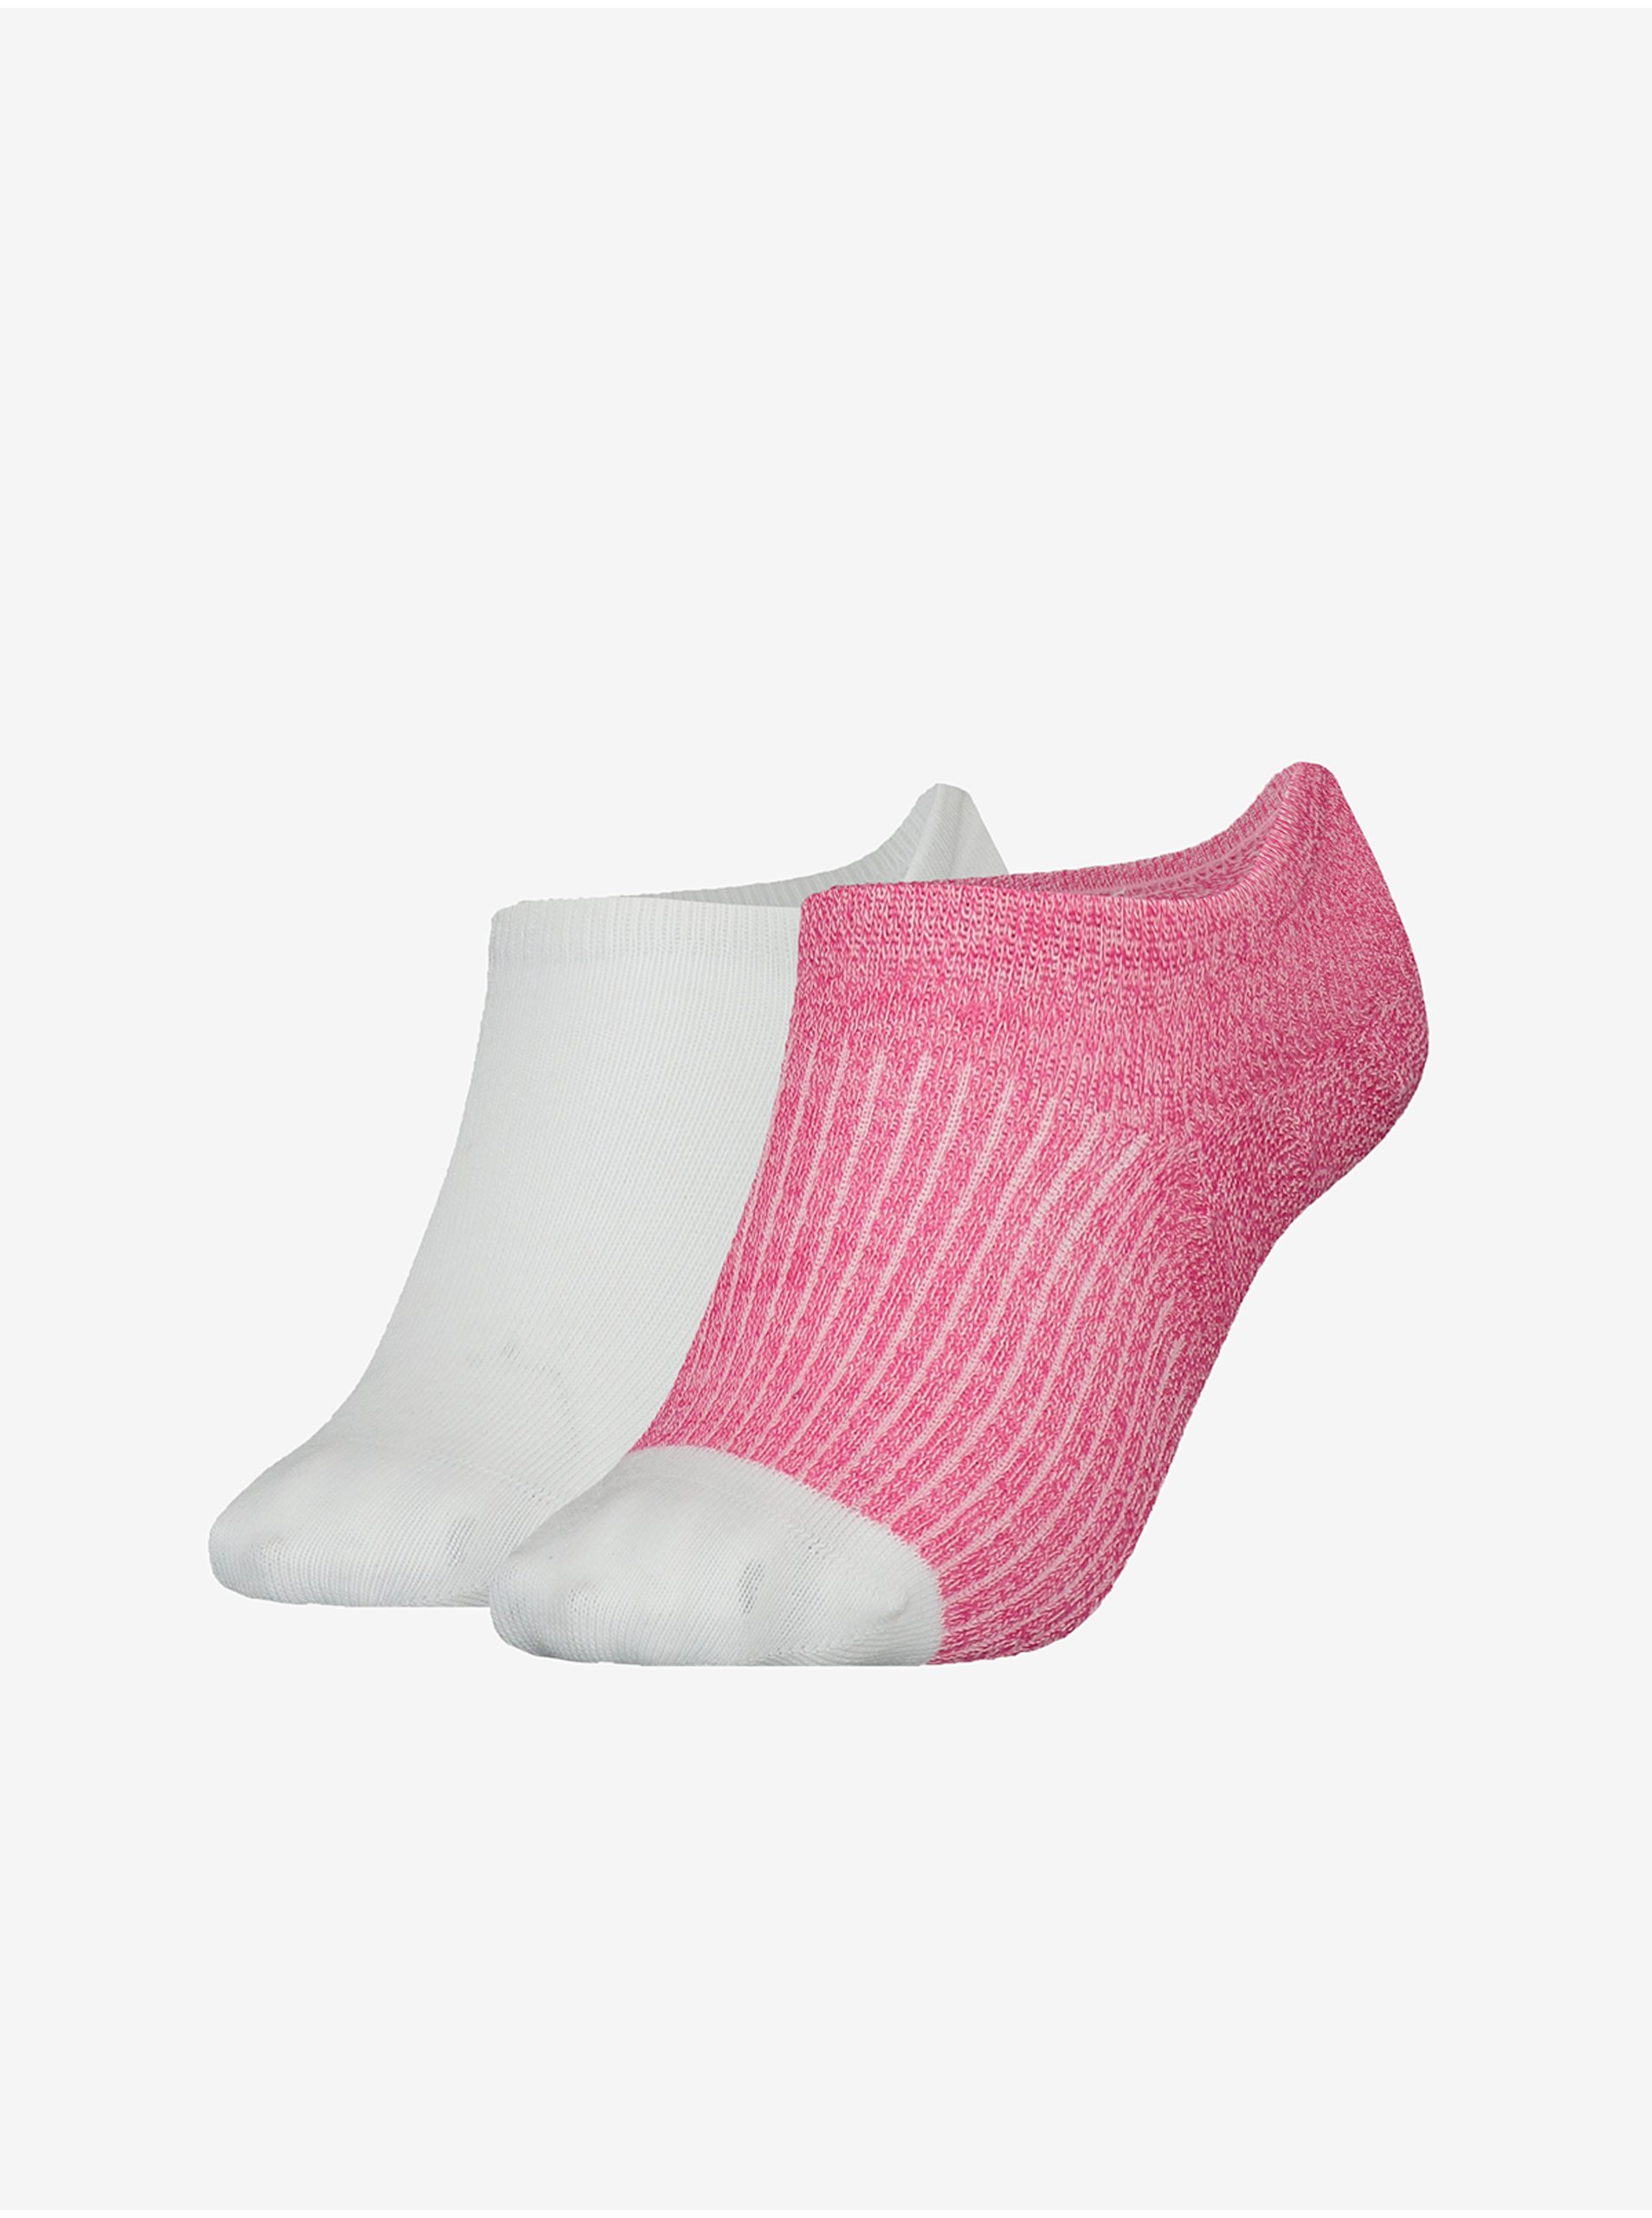 Lacno Súprava dvoch párov dámskych ponožiek v bielej a ružovej farbe Tommy Hilfiger